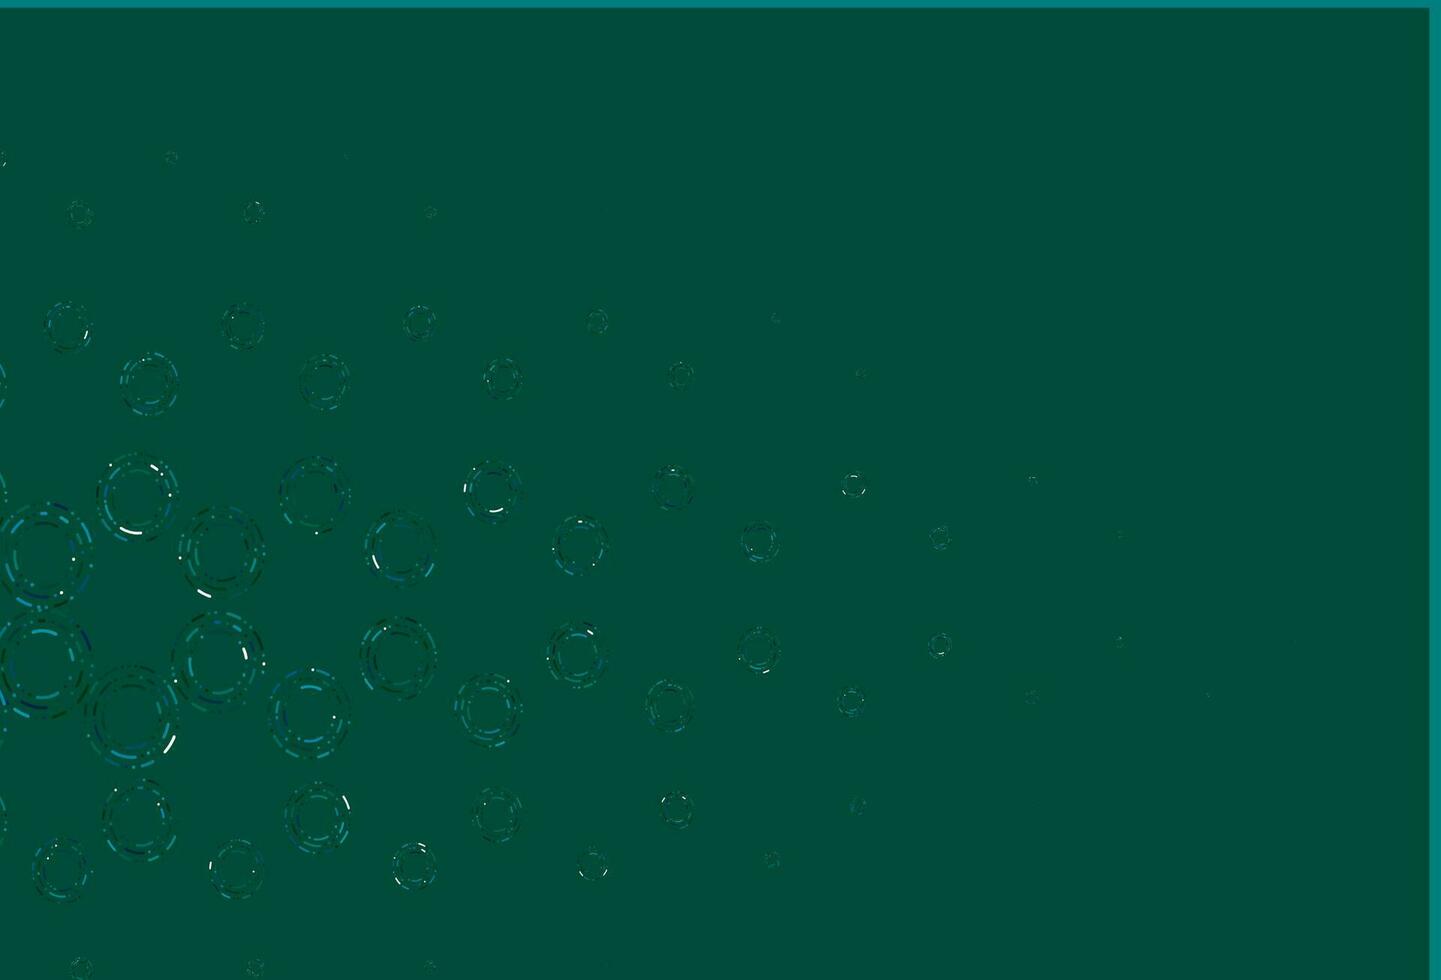 patrón de vector azul claro, verde con esferas.